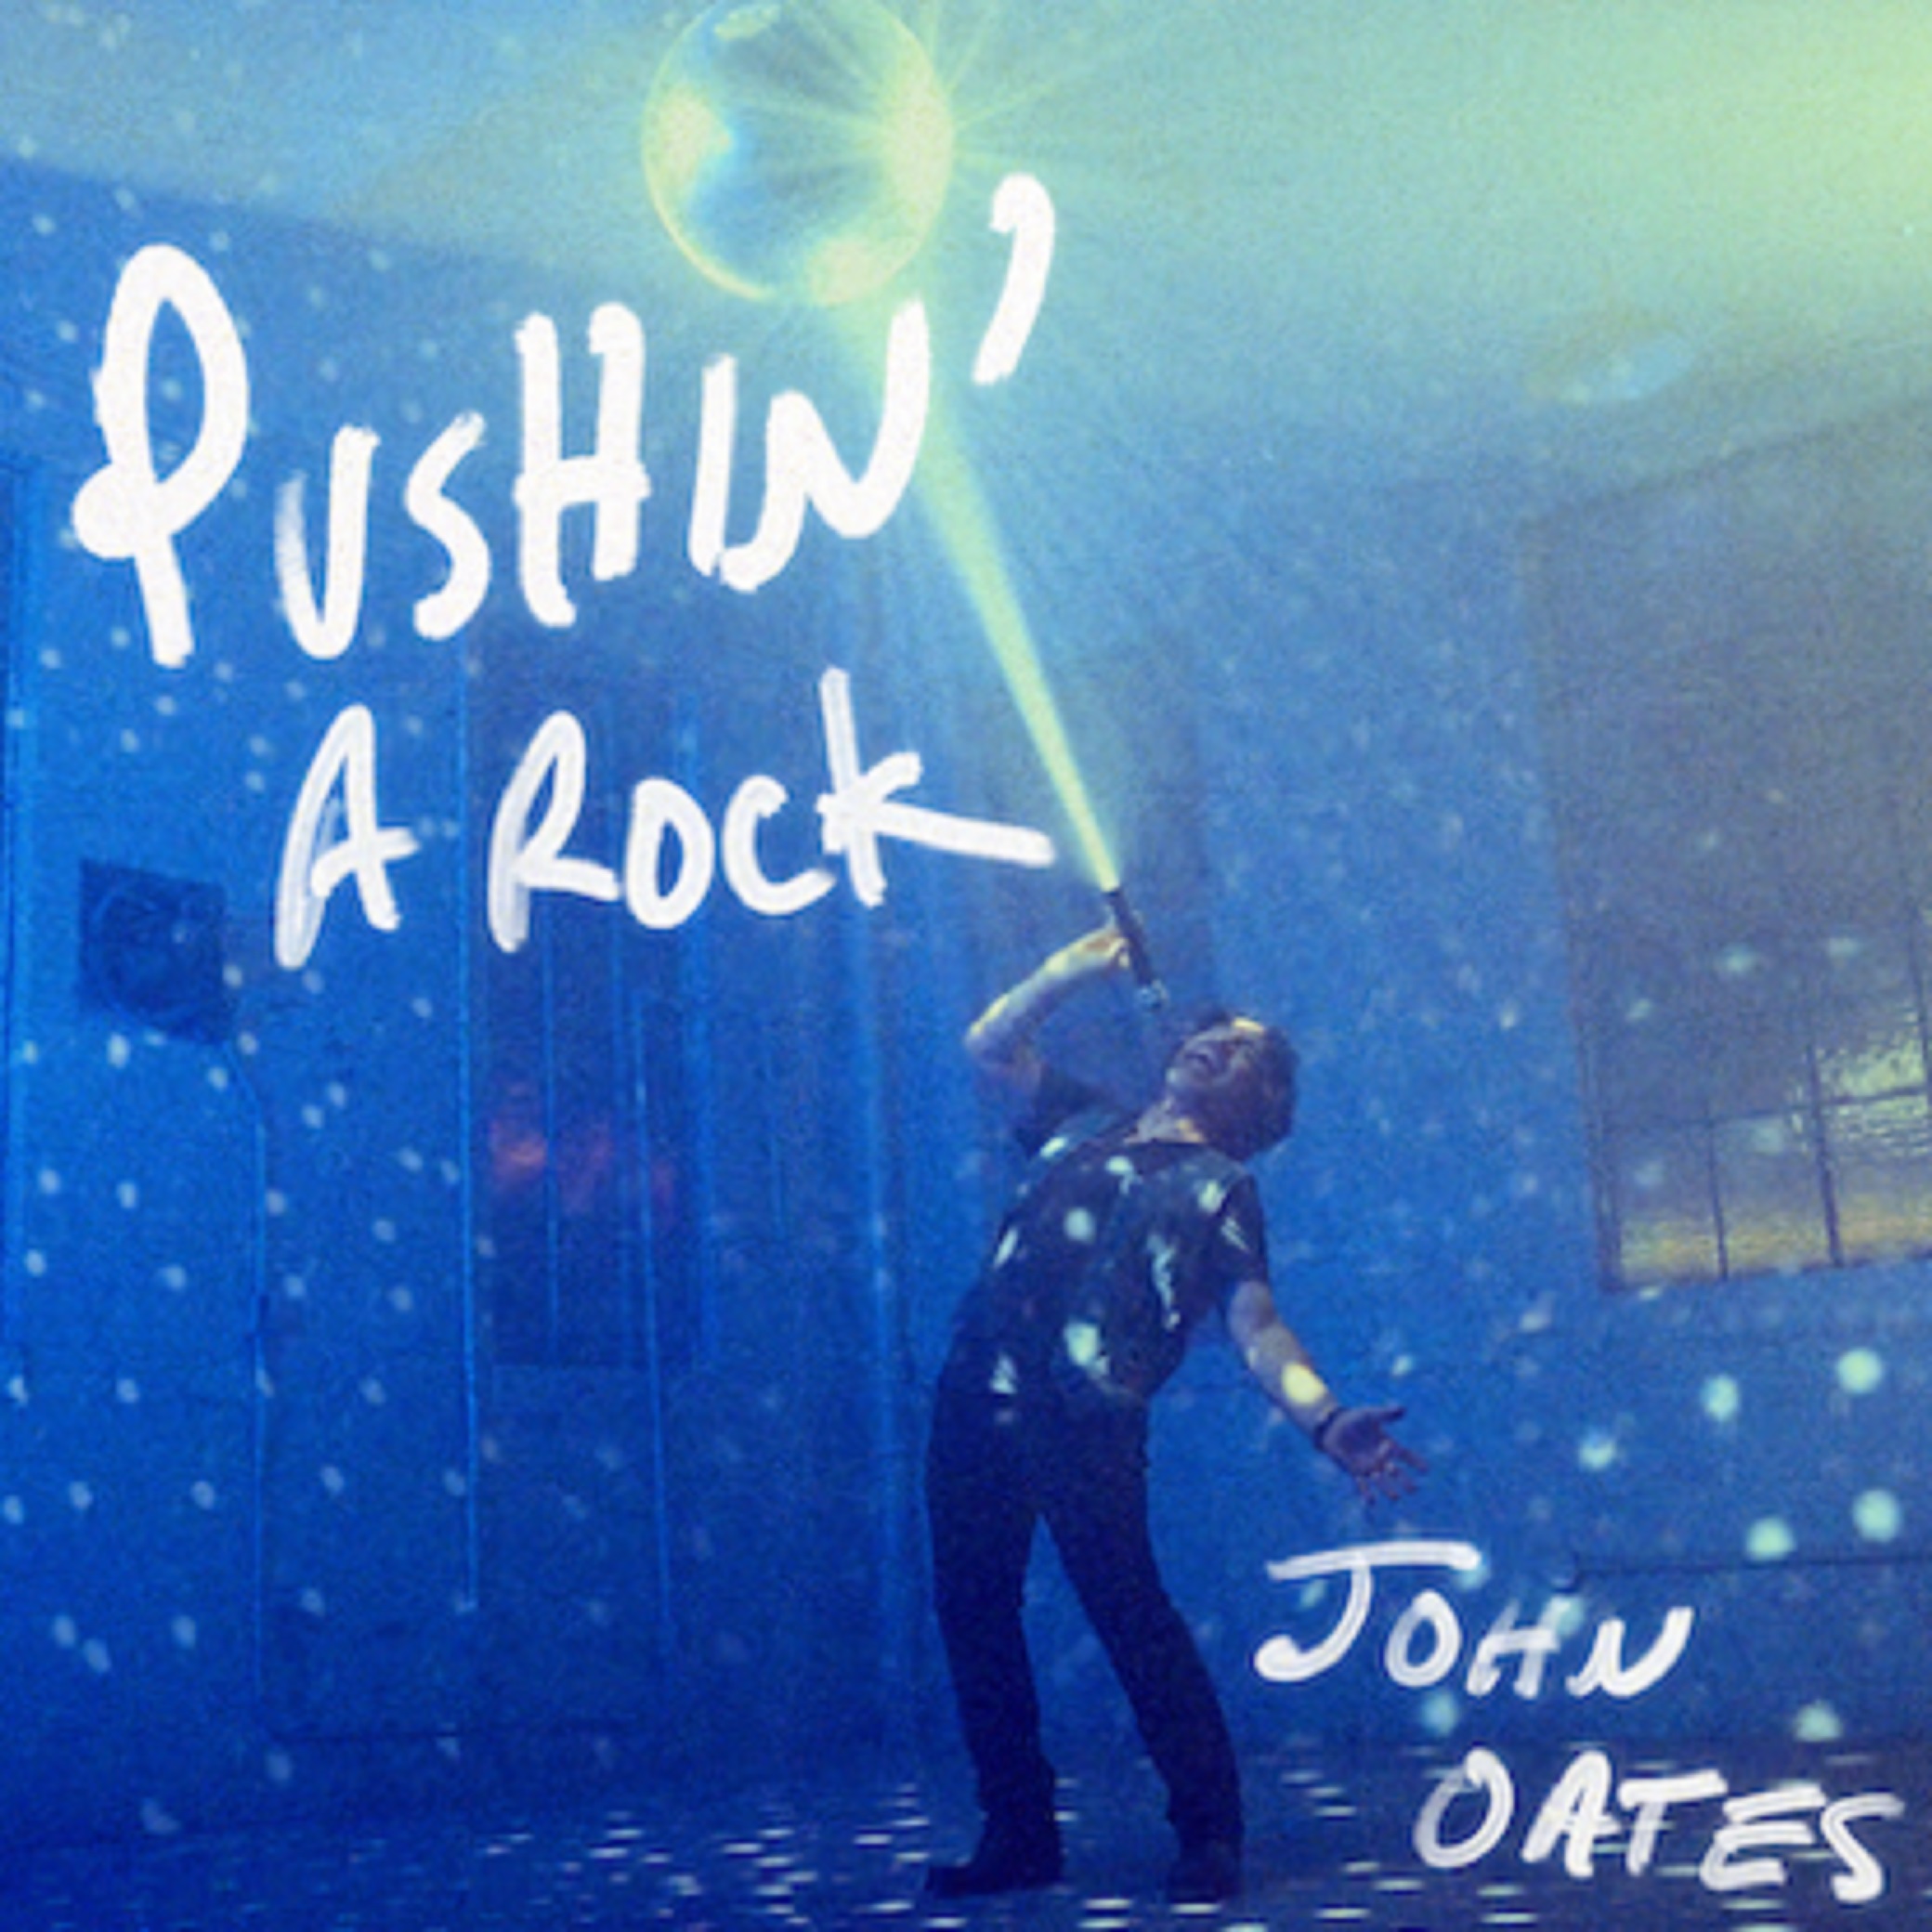 JOHN OATES Releases New Single “Pushin A Rock”